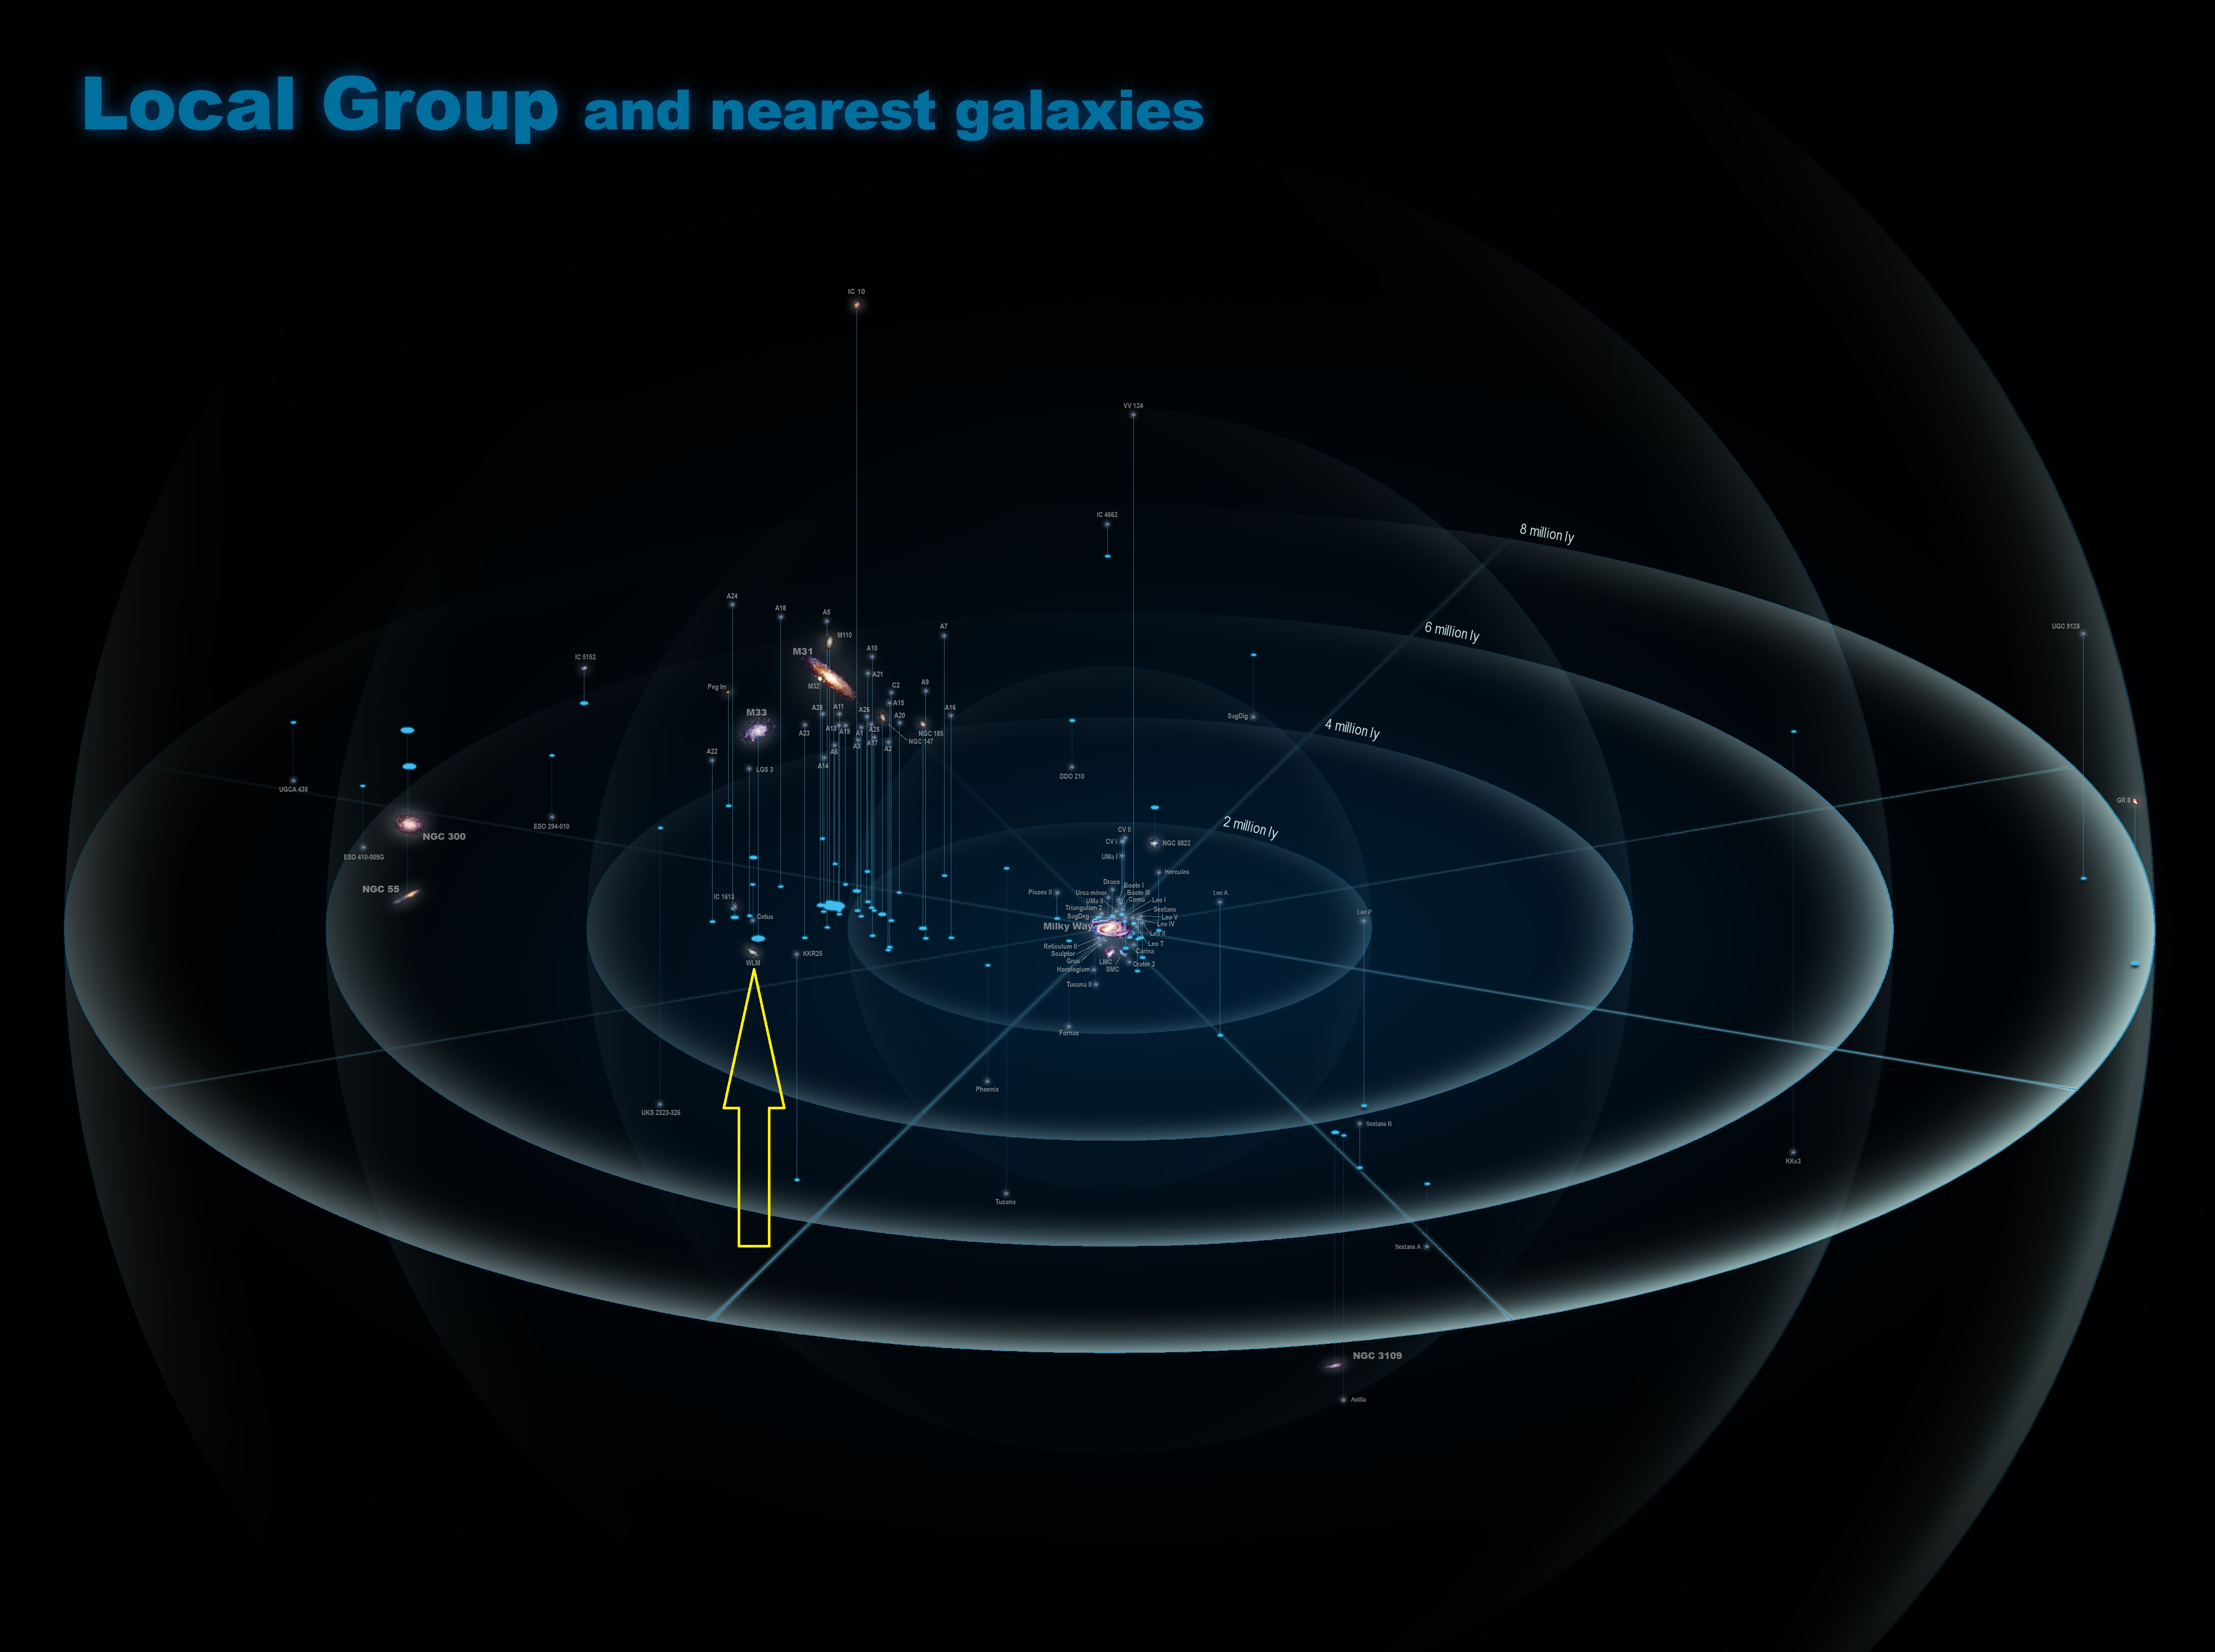 Wskazane za pomocą żółtej strzałki położenie galaktyki karłowatej Wolf-Lundmark-Melotte (w skrócie WLM) w Lokalnej Grupie Galaktyk. W centrum rysunku znajduje się nasza Droga Mleczna, a galaktyka WLM znajduje się w odległości ~3 milionów l.św. na obrzeżach naszej grupy galaktyk. Źródło: Antonio Ciccolella, Wikipedia